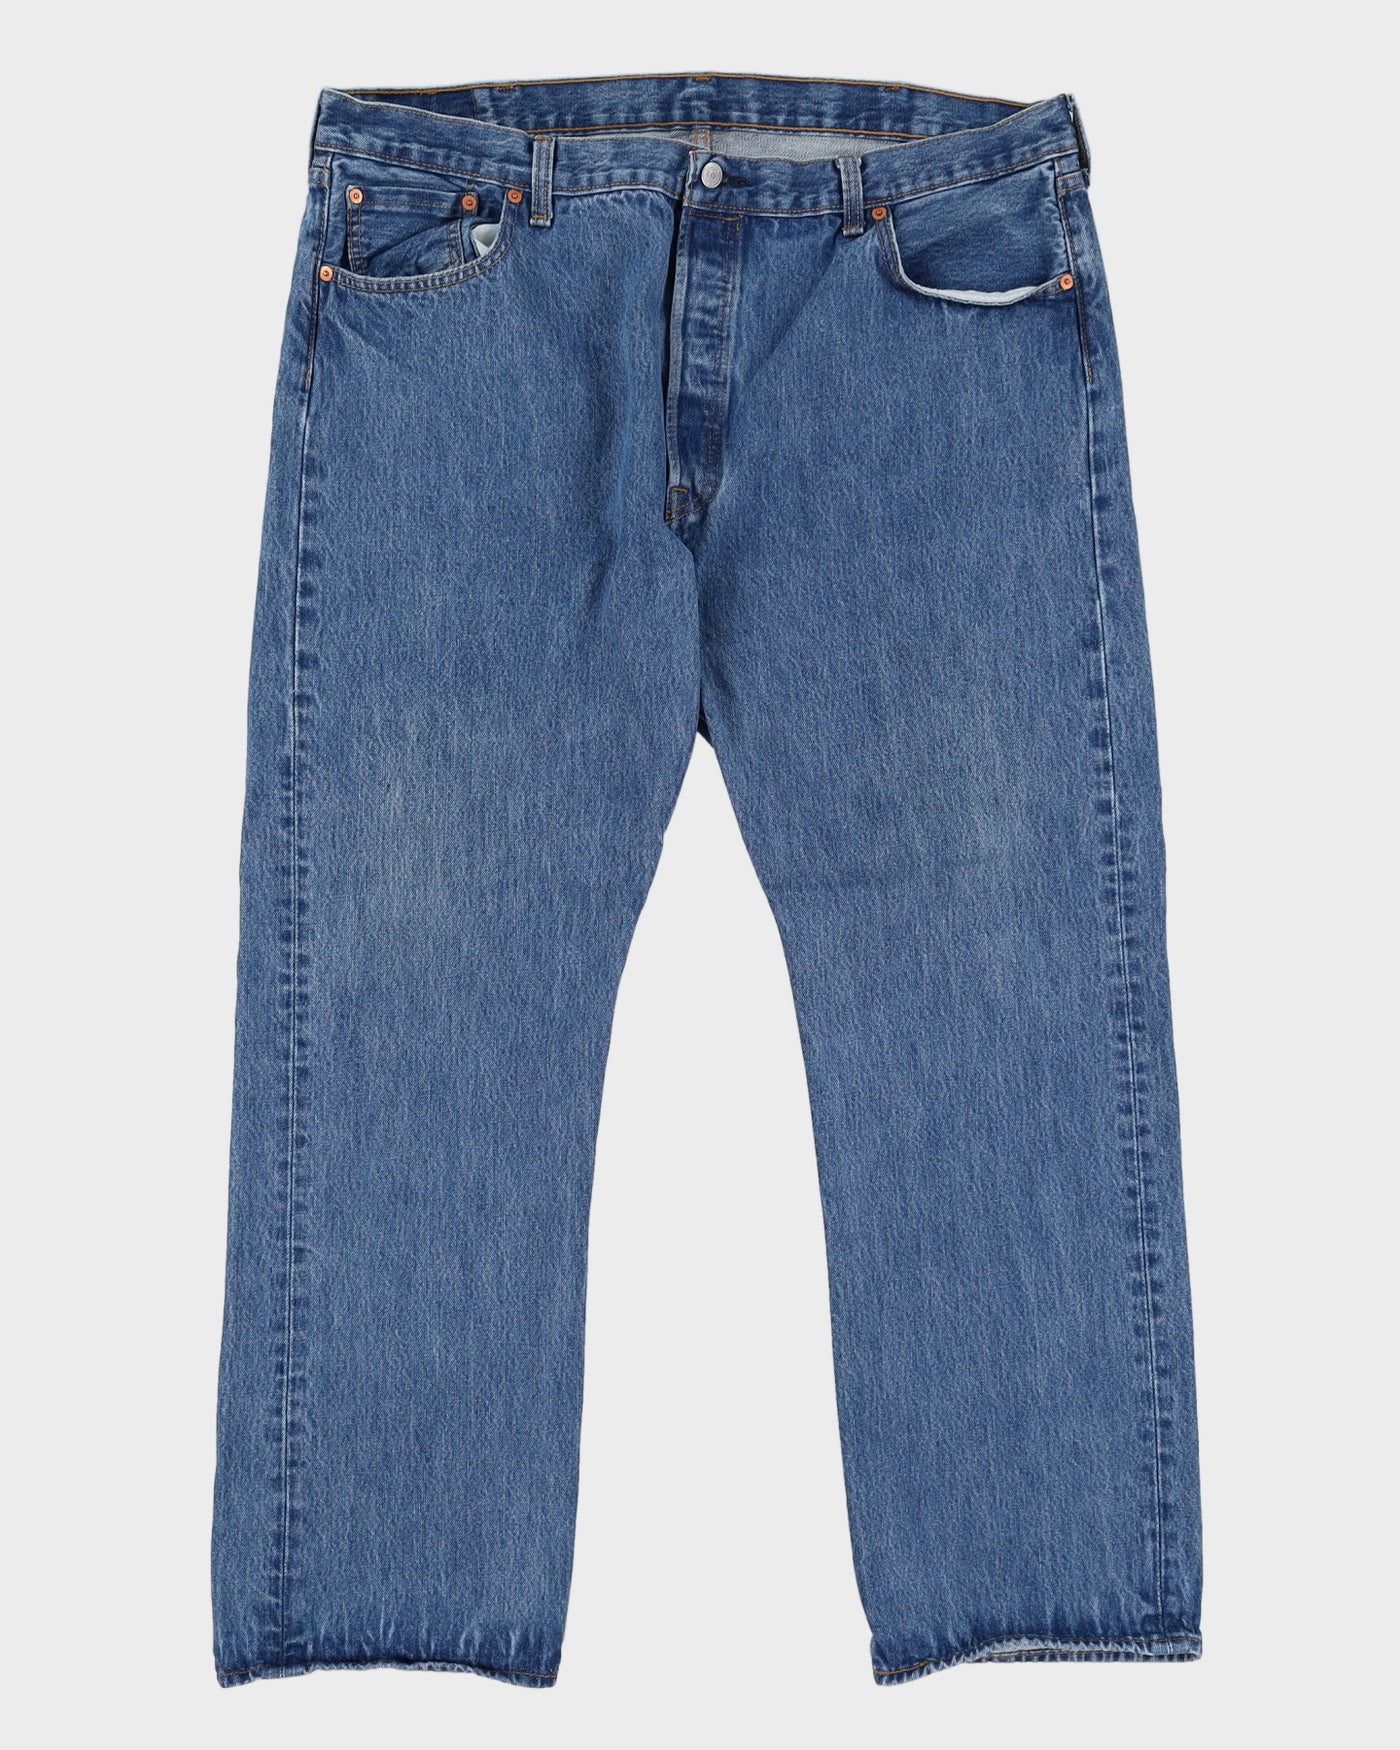 Vintage 90s Levi's 501 Blue Jeans - W42 L31